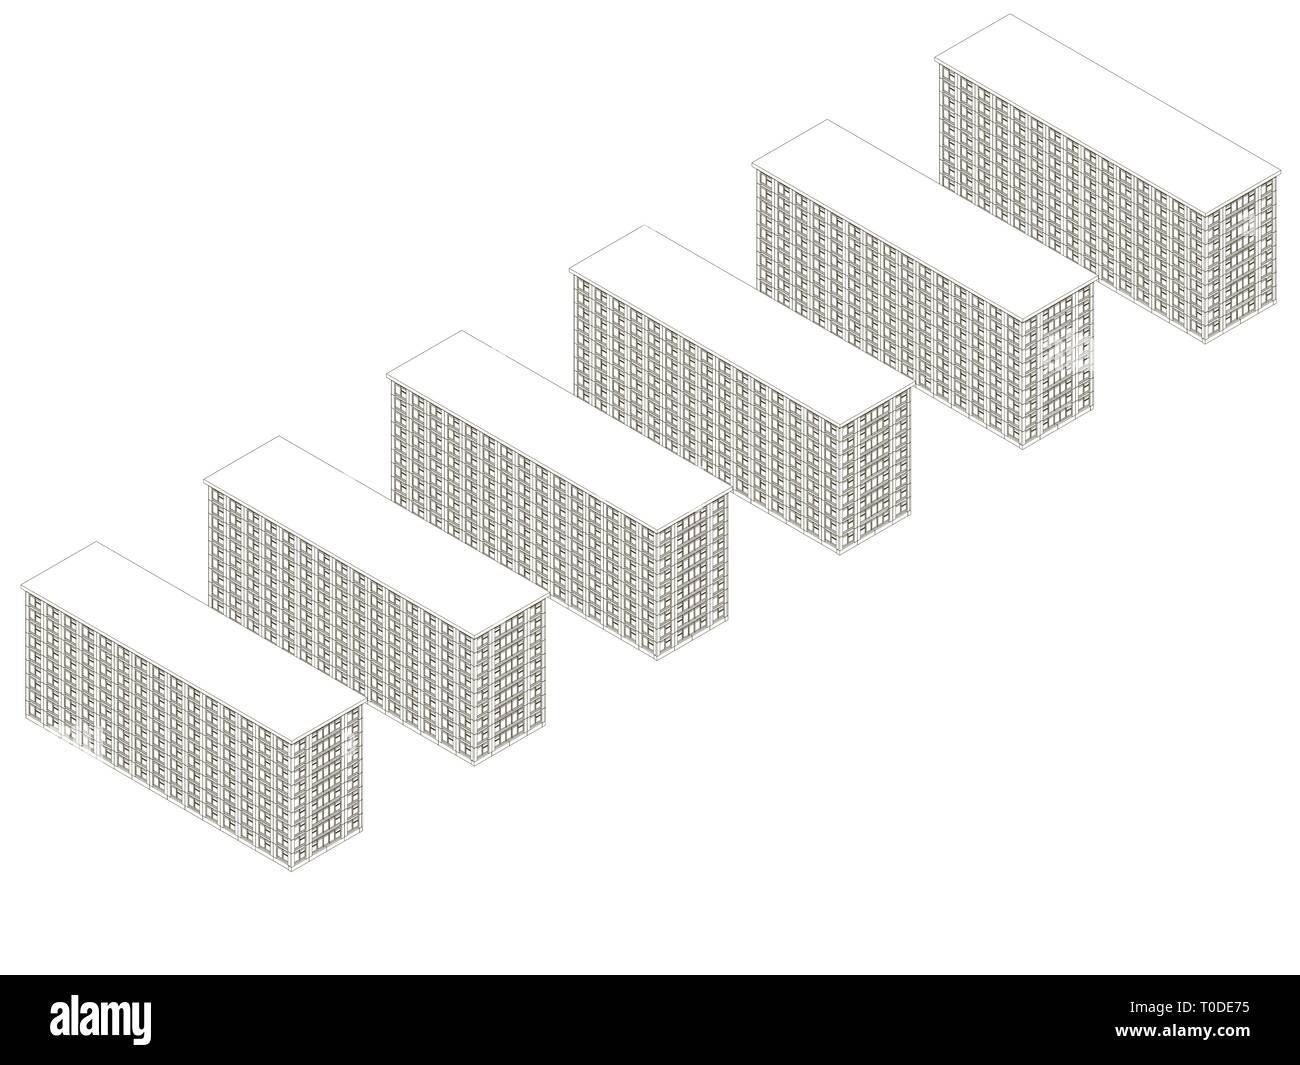 Arrière-plan avec contours de bâtiments à plusieurs étages de lignes noires sur fond blanc. Vue isométrique. Vector illustration Illustration de Vecteur